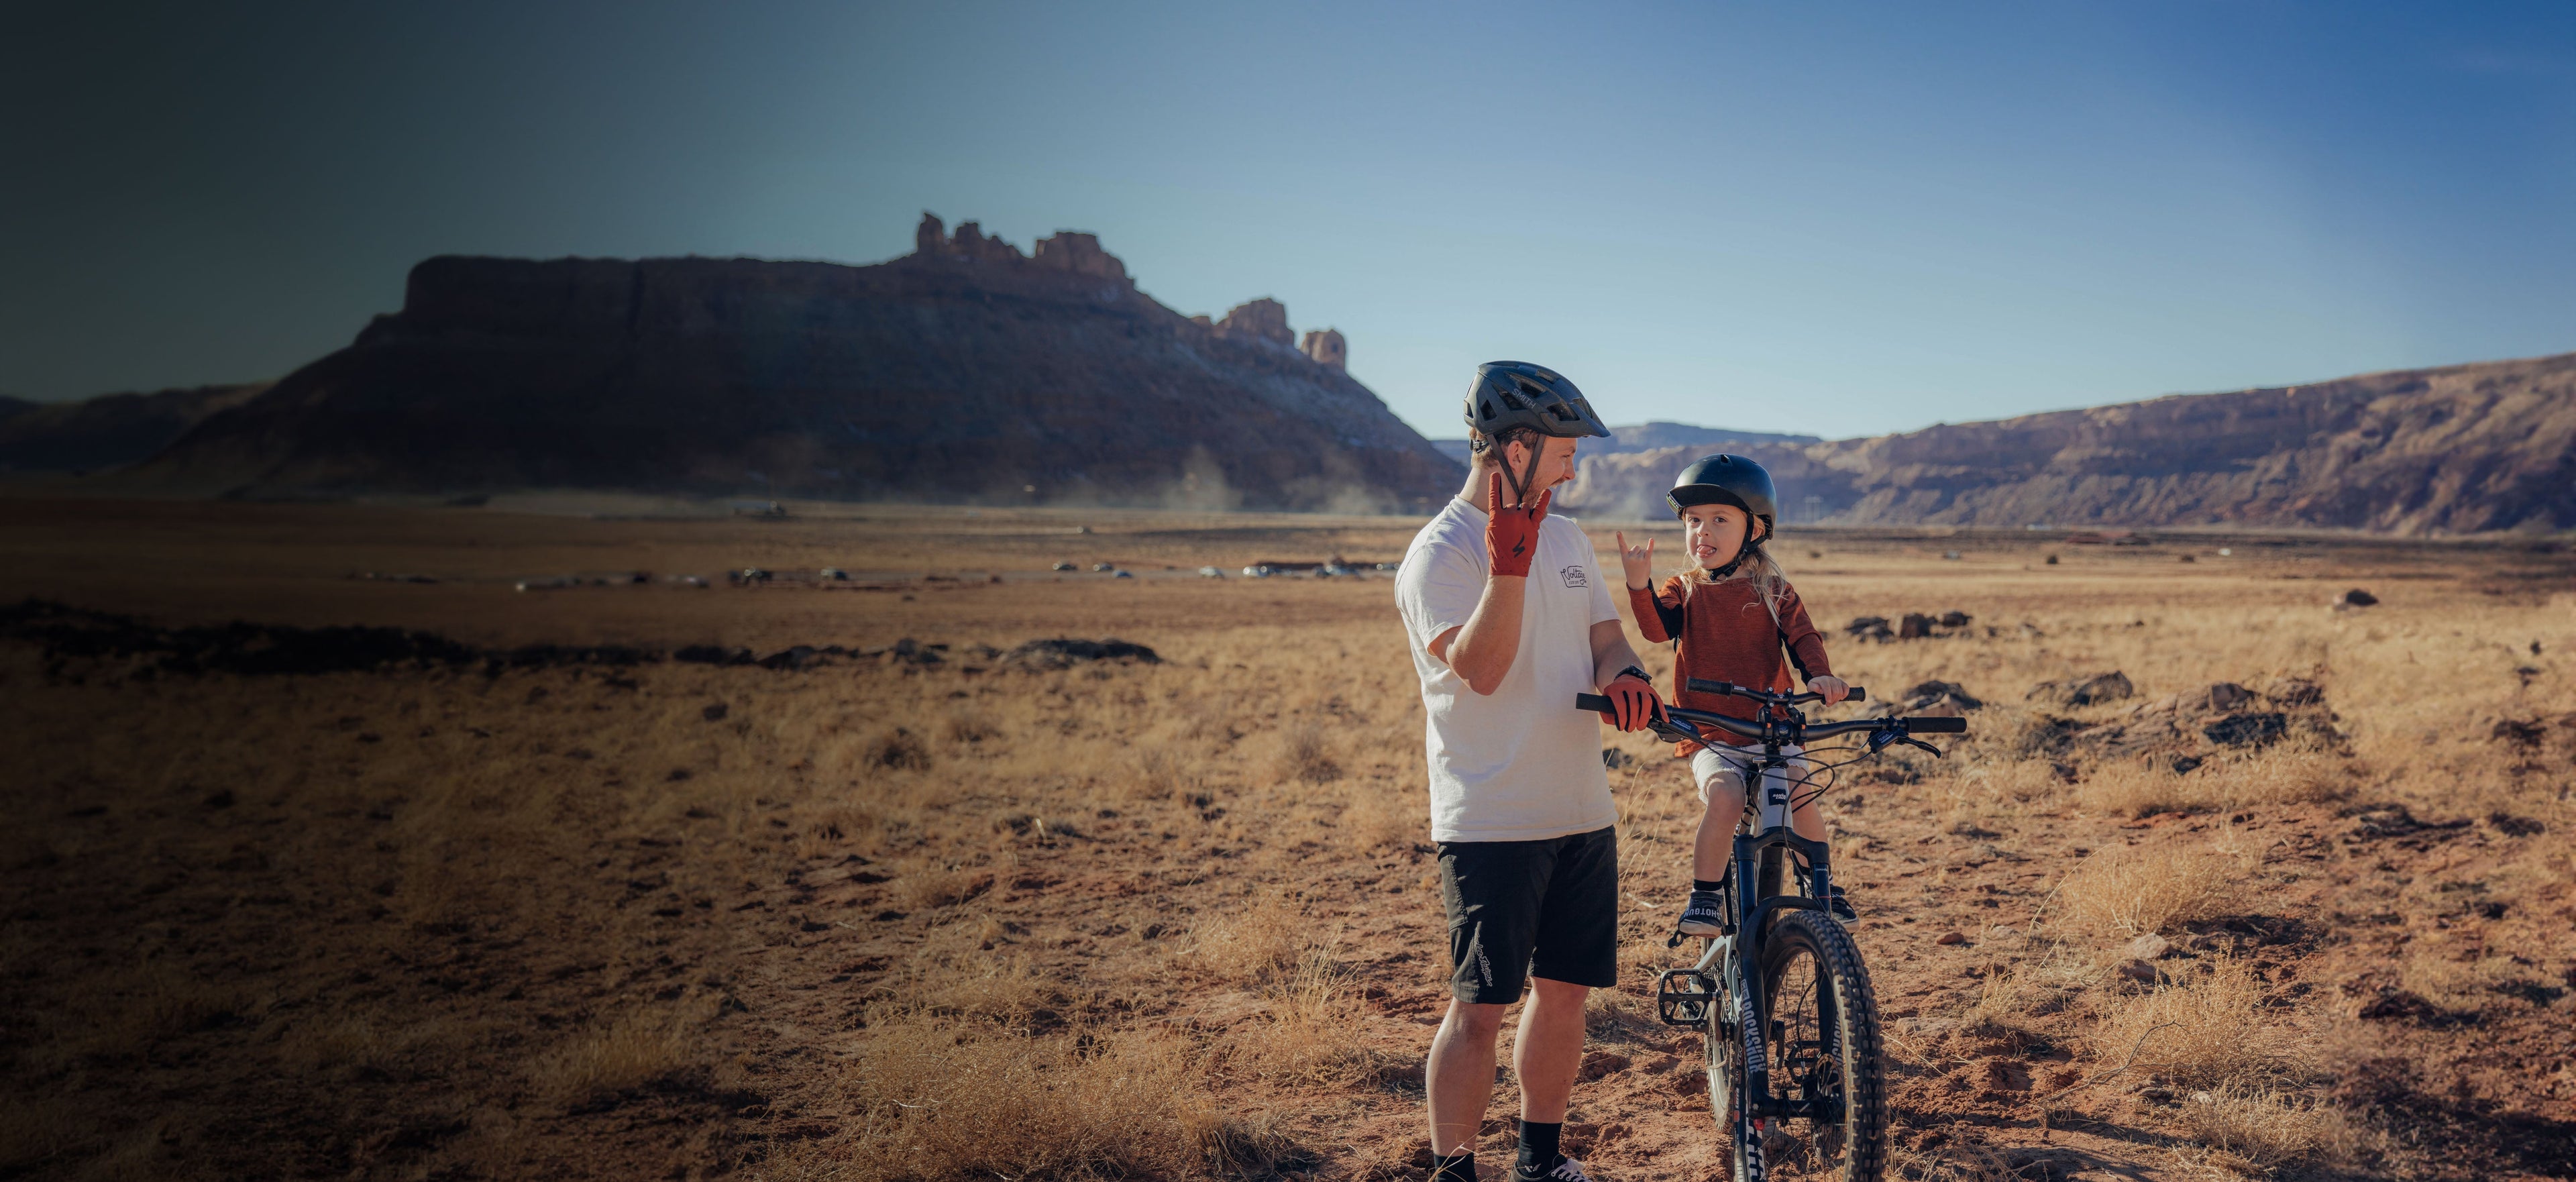 Shotgun: Der rahmenmontierte Mountainbike-Sitz für Kinder – Kids